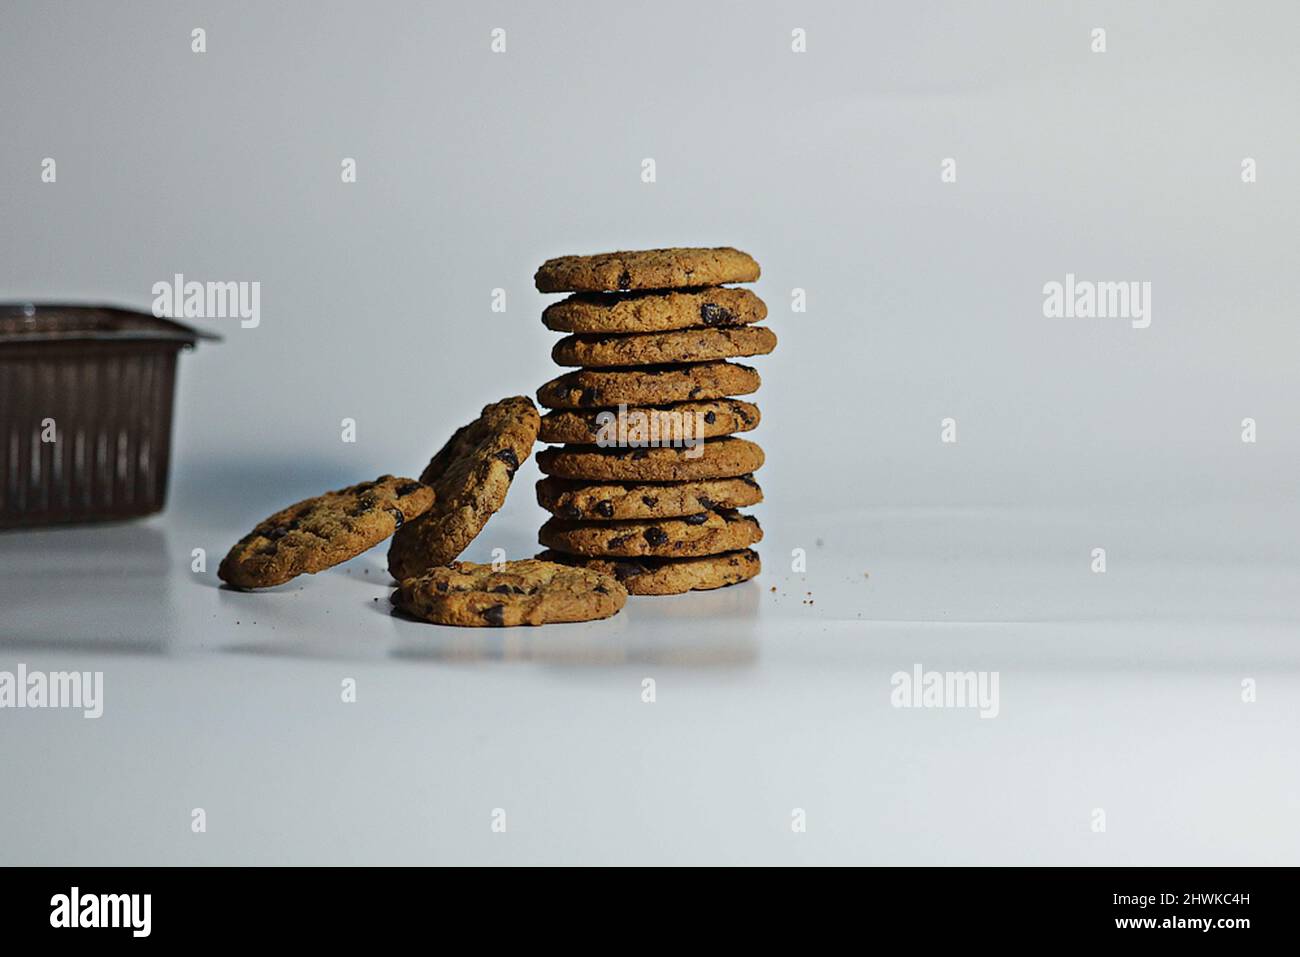 hora de la galleta: galletas de chocolate de gran tamaño sobre fondo blanco Foto de stock